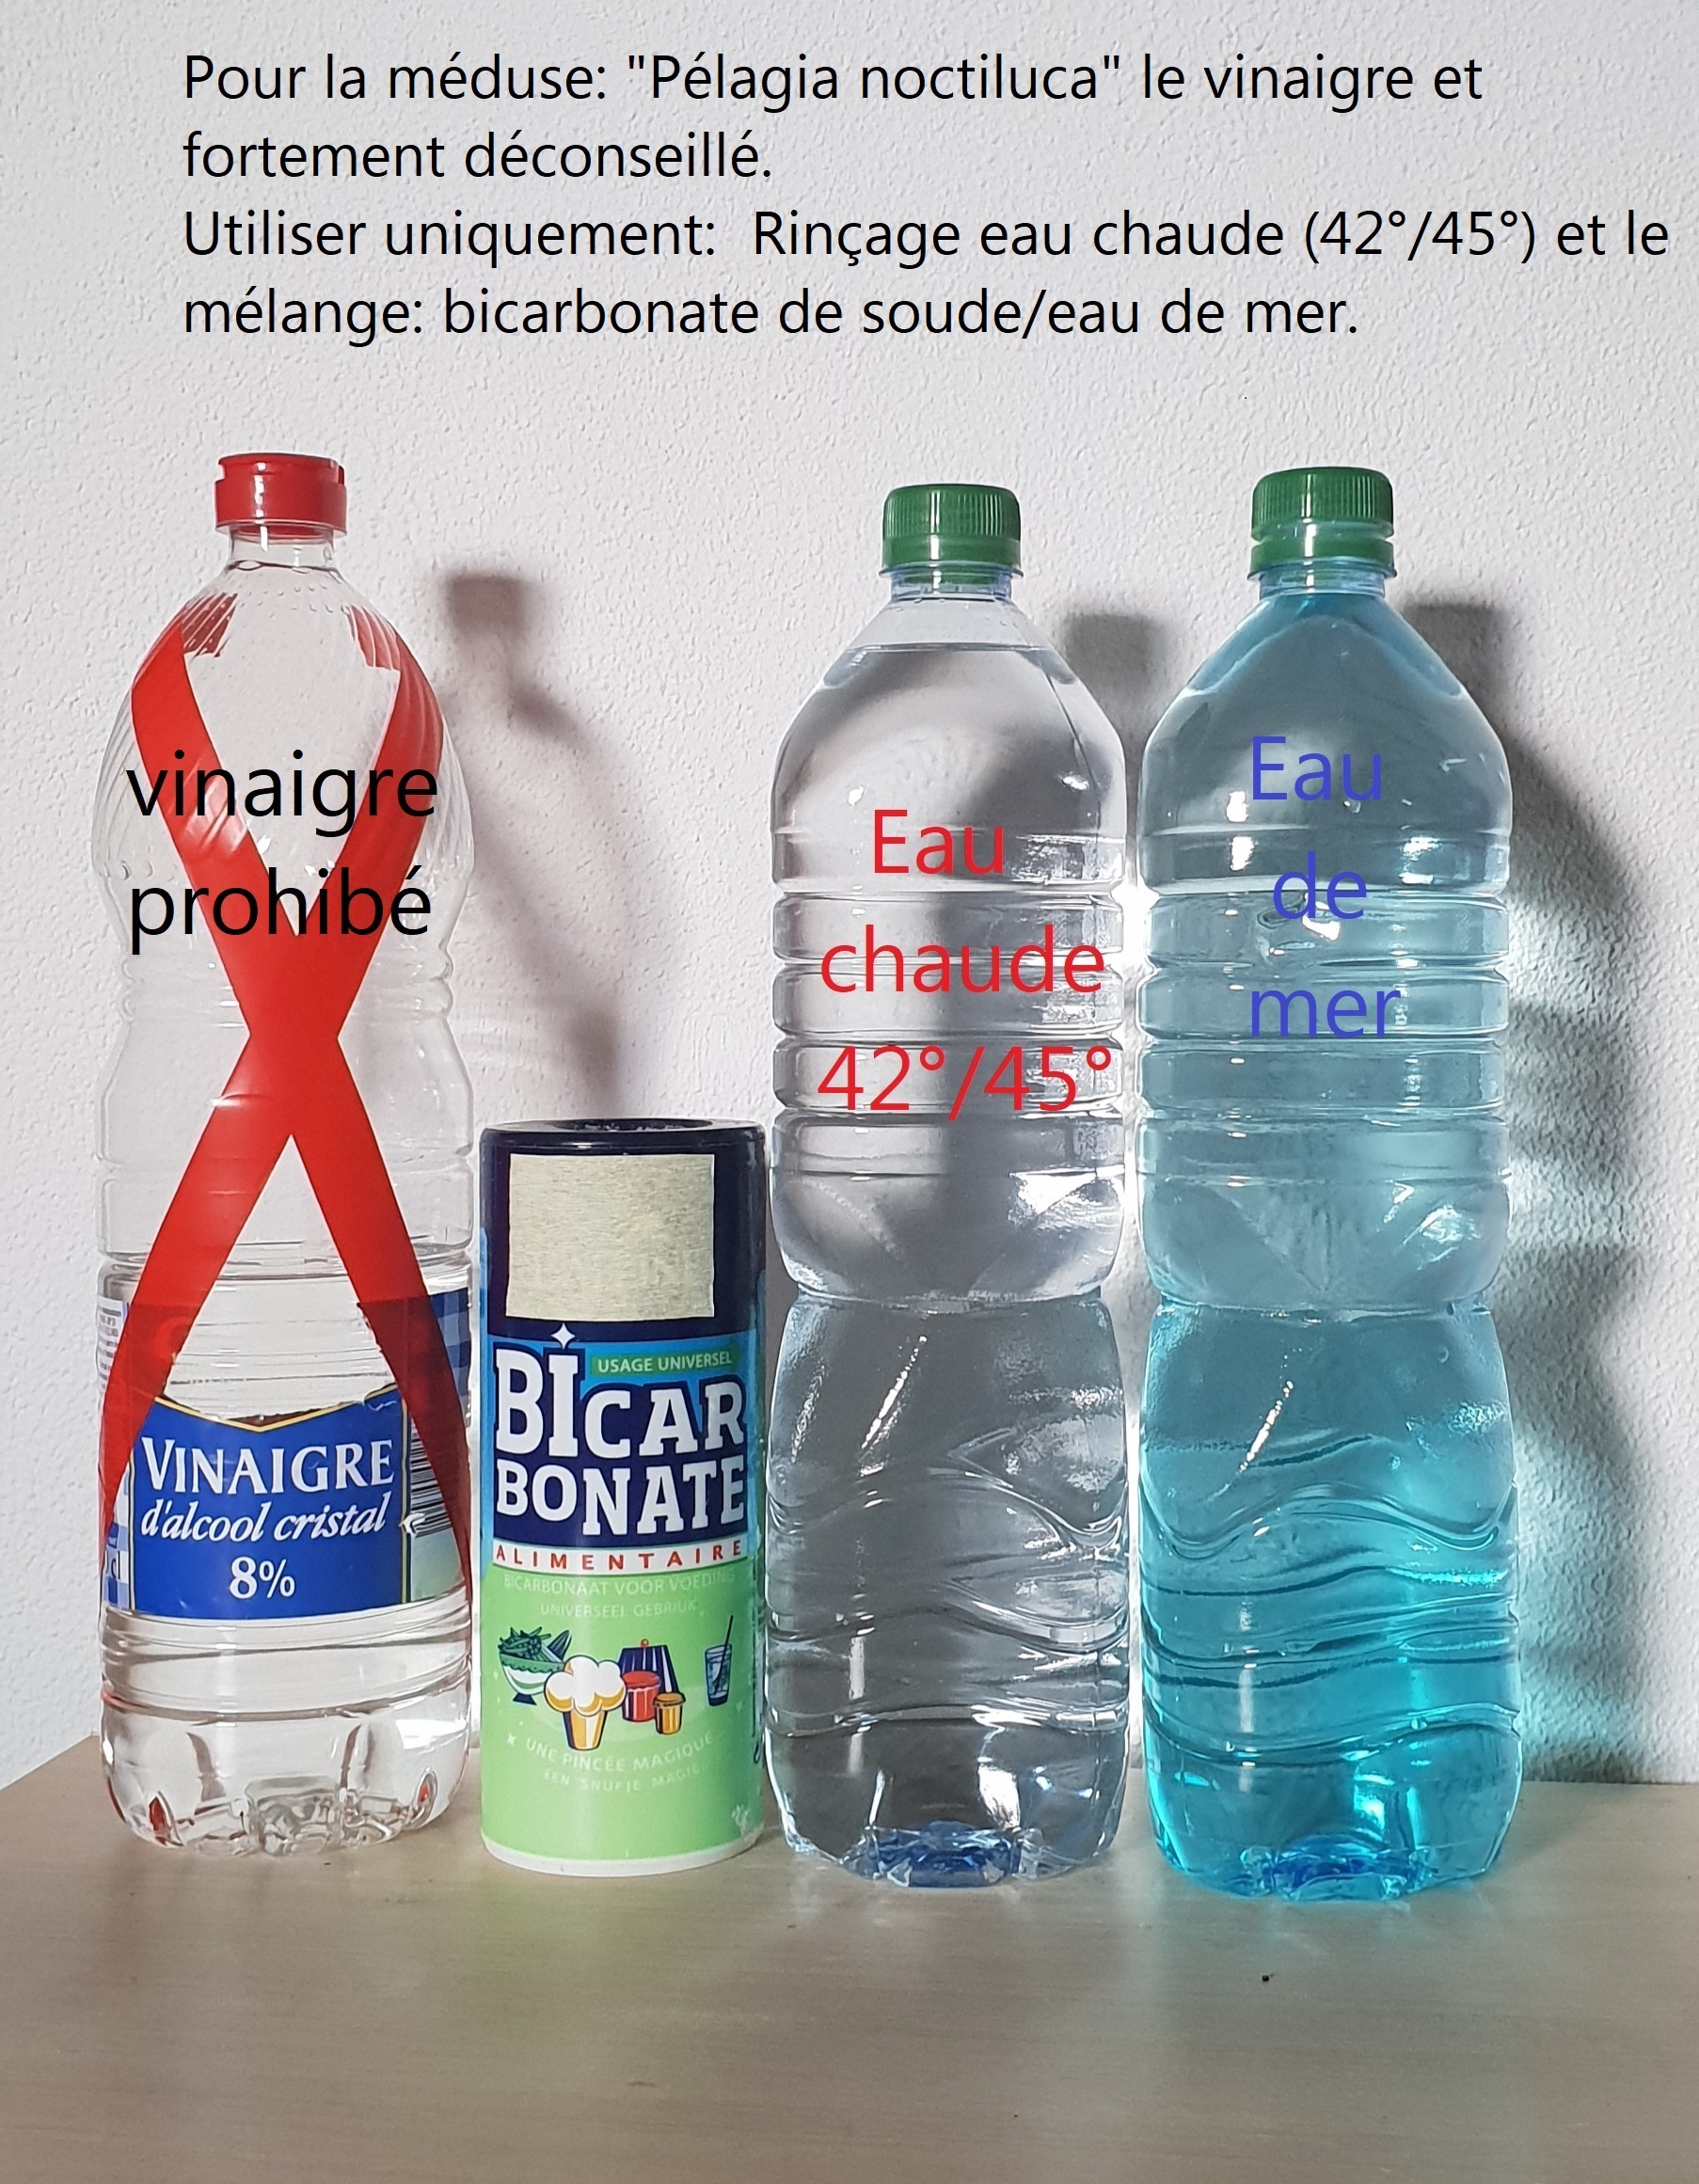 Piqûres des méduses : bicarbonate / eau de mer / eau chaude) sont  scientifiquement  les plus efficaces  . dans Non classÃ© h53x